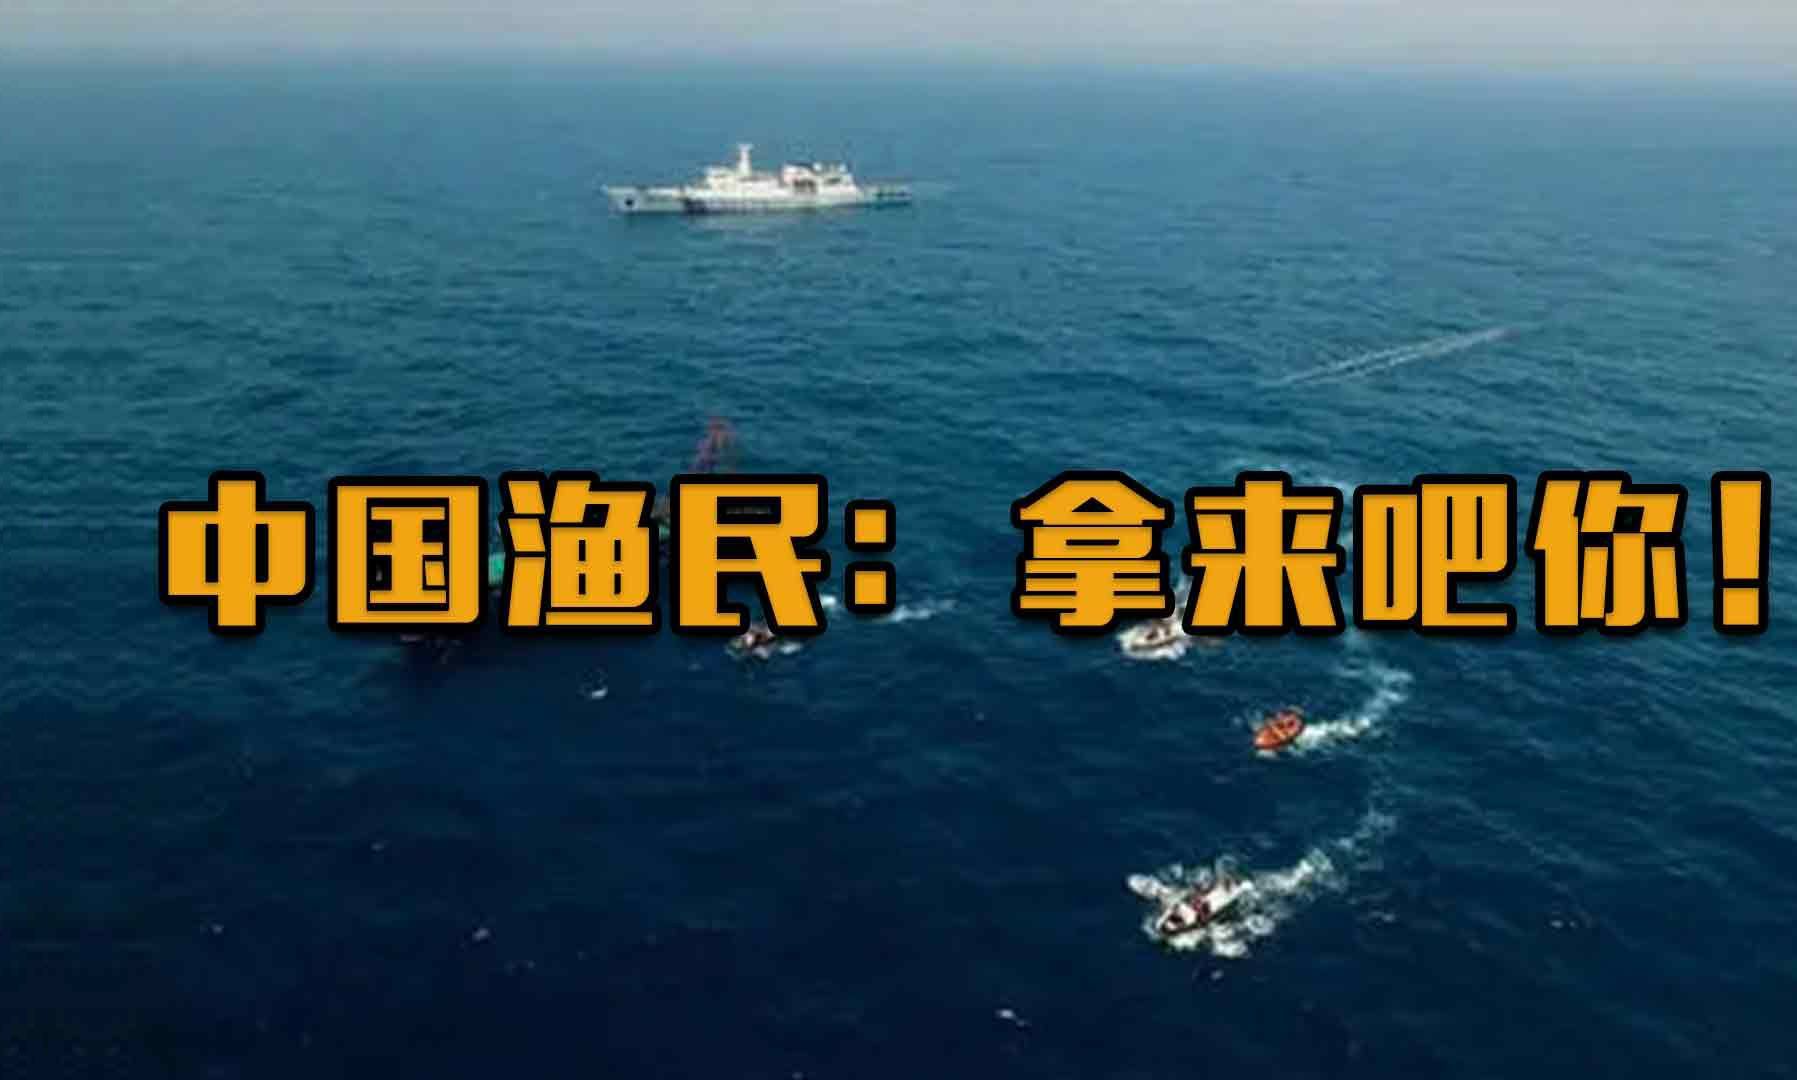 中国渔民有多牛?撞军舰,捞潜艇,抢声呐,追着美国军舰一路跑